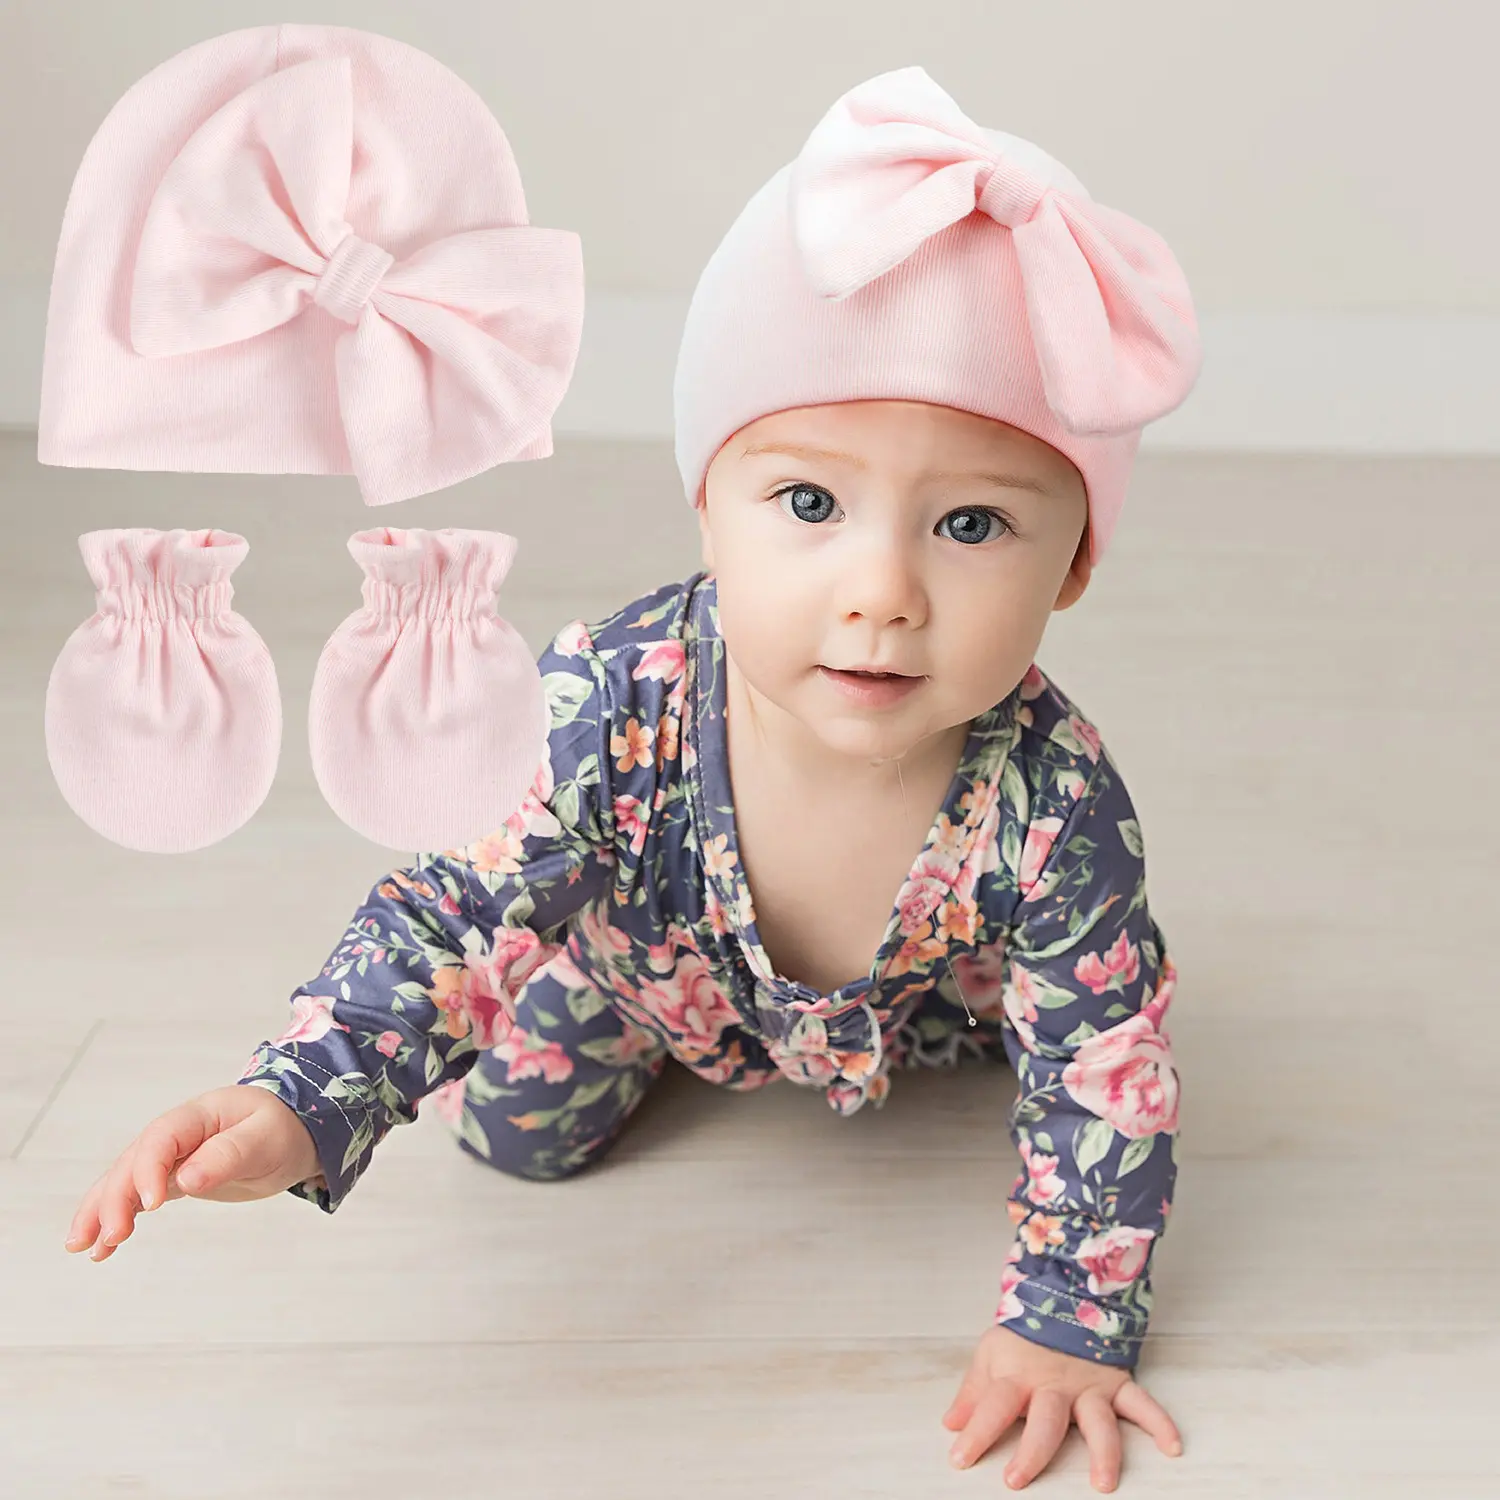 HZM-23437素敵な女の子の厚い赤ちゃん綿の赤ちゃんの帽子の手袋は新生児のための大きな蝶結びの赤ちゃんのものを設定します